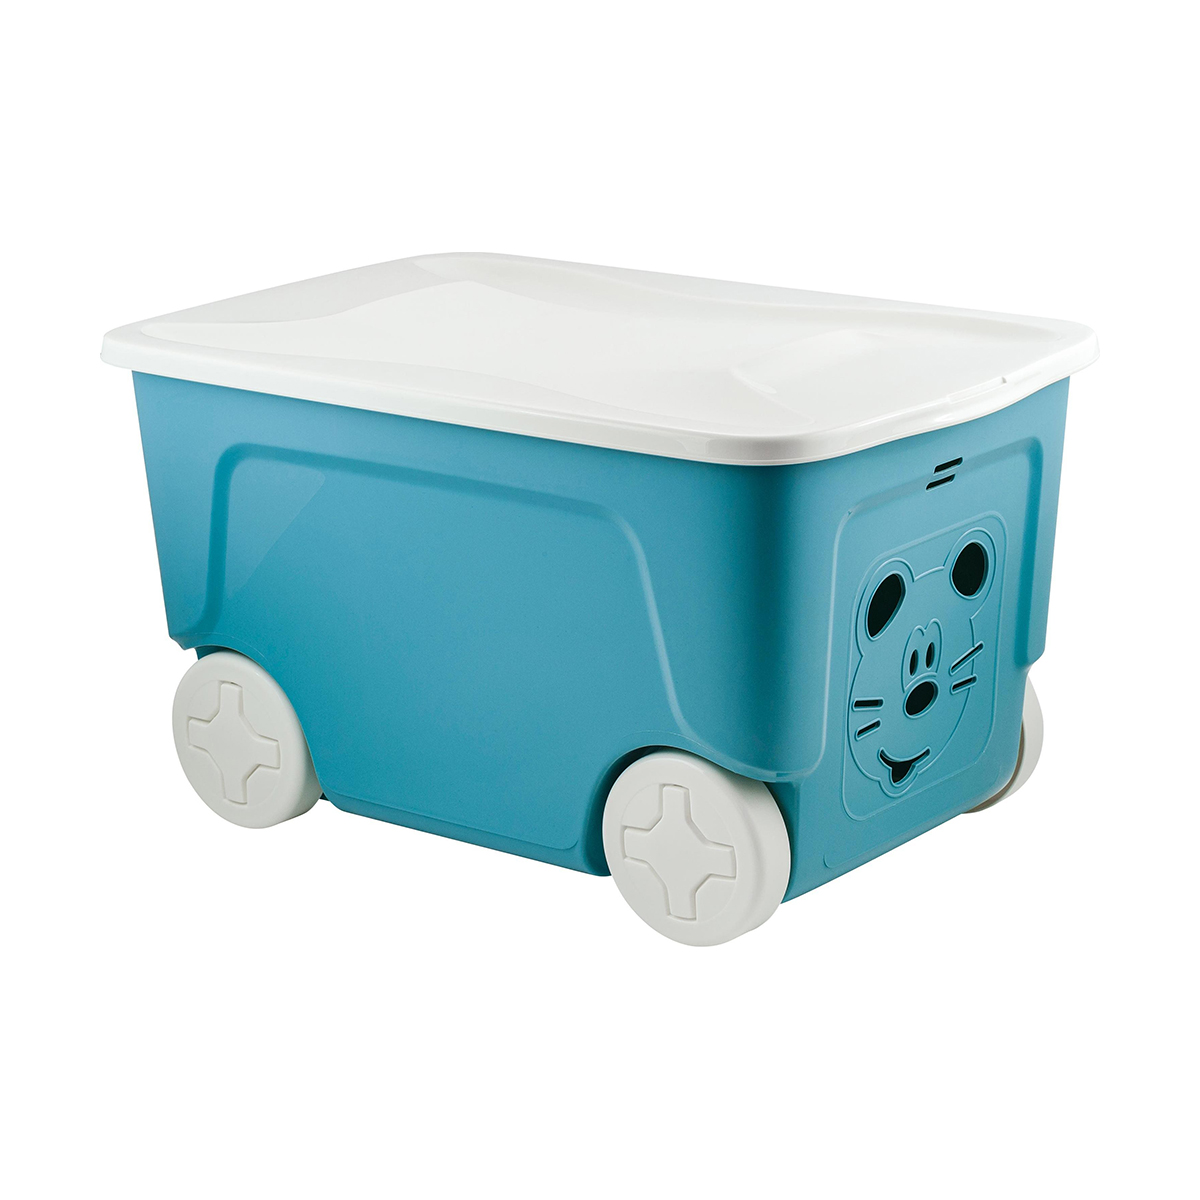 Ящик для игрушек на колесах Lalababy Play with Me, 59 x 38,3 x 33 см, 50 л, синий колокол ящик для хранения на колесах ikea vessla вессла синий